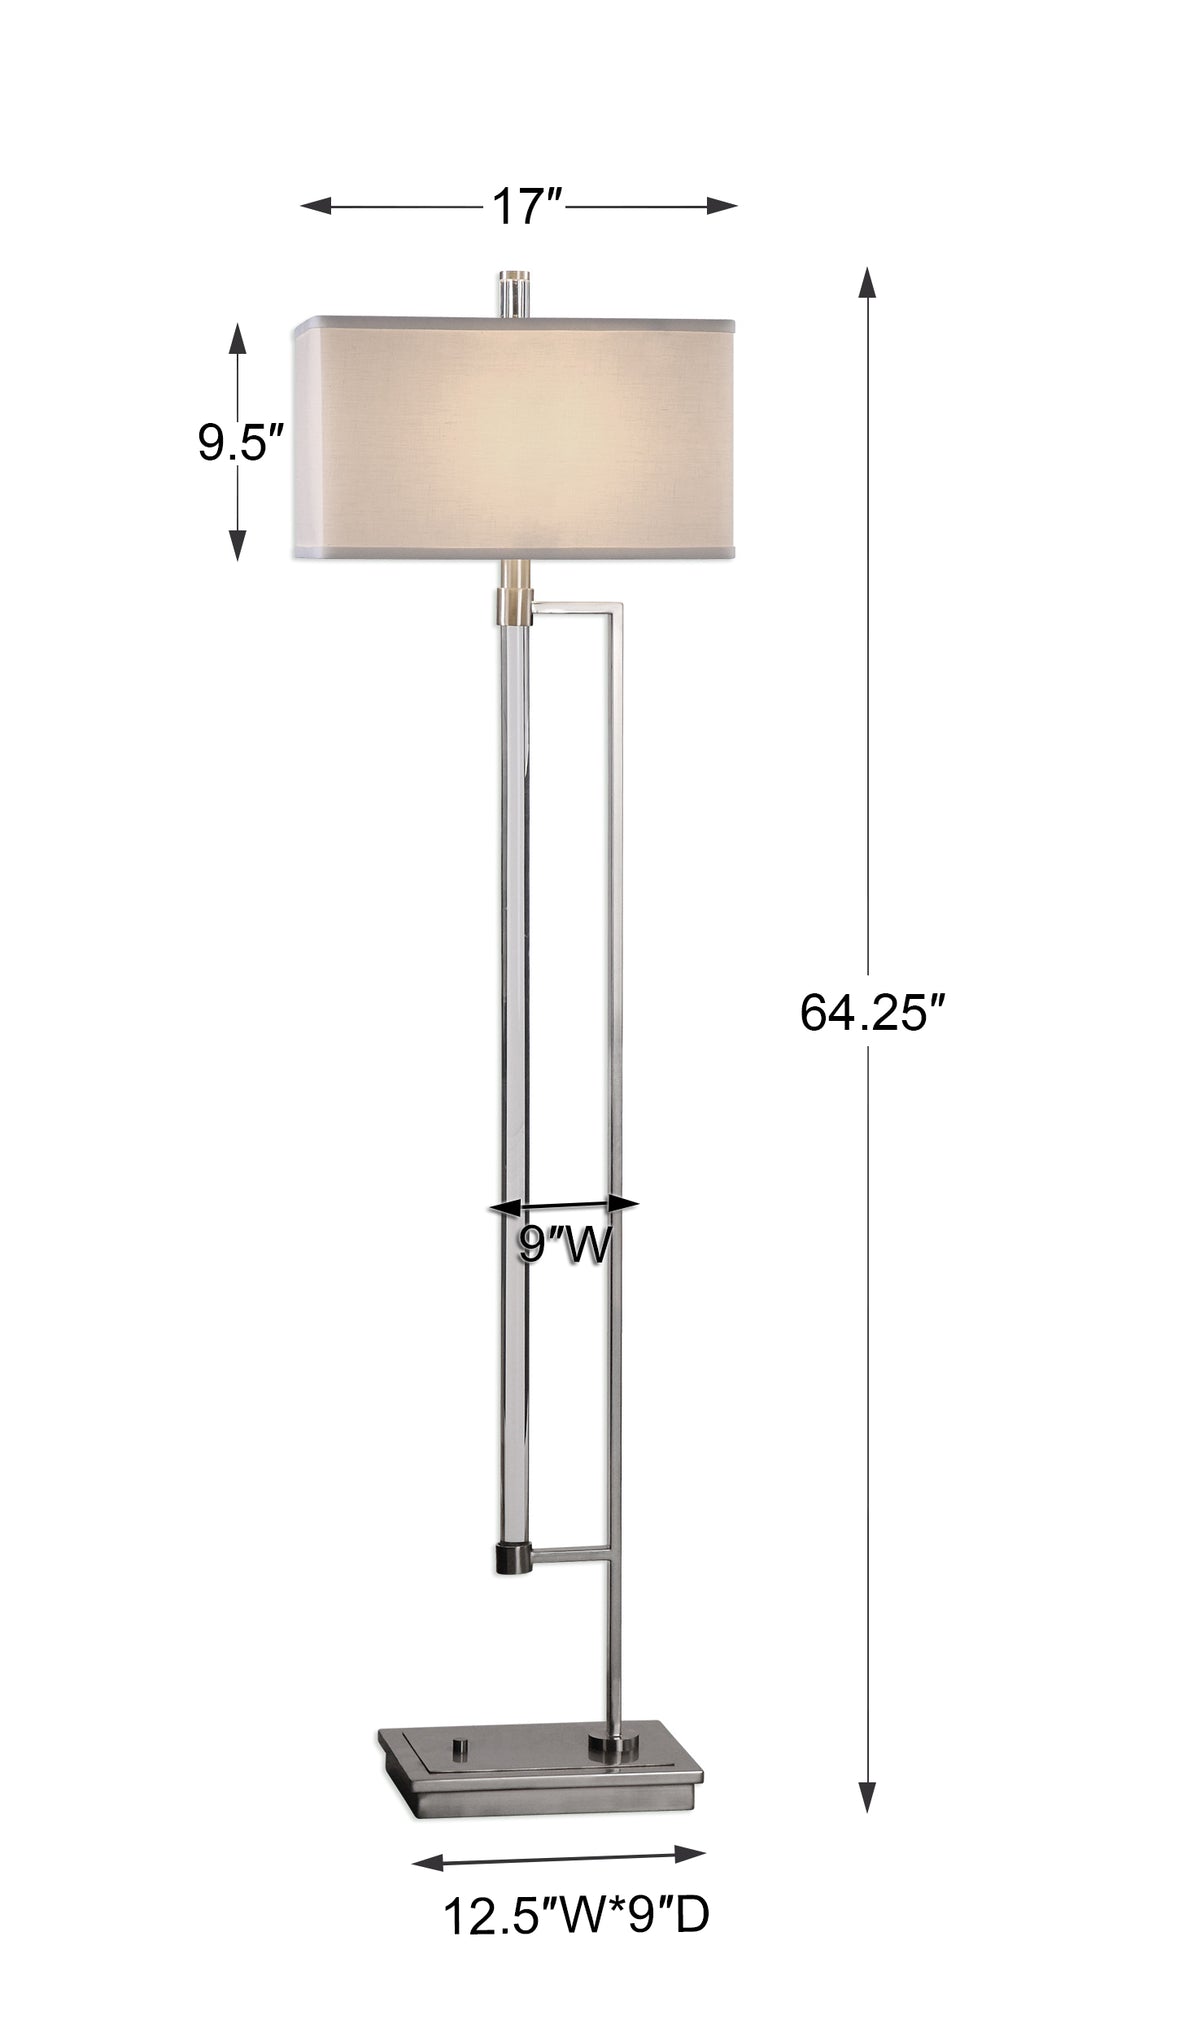 Uttermost Mannan Modern Floor Lamp